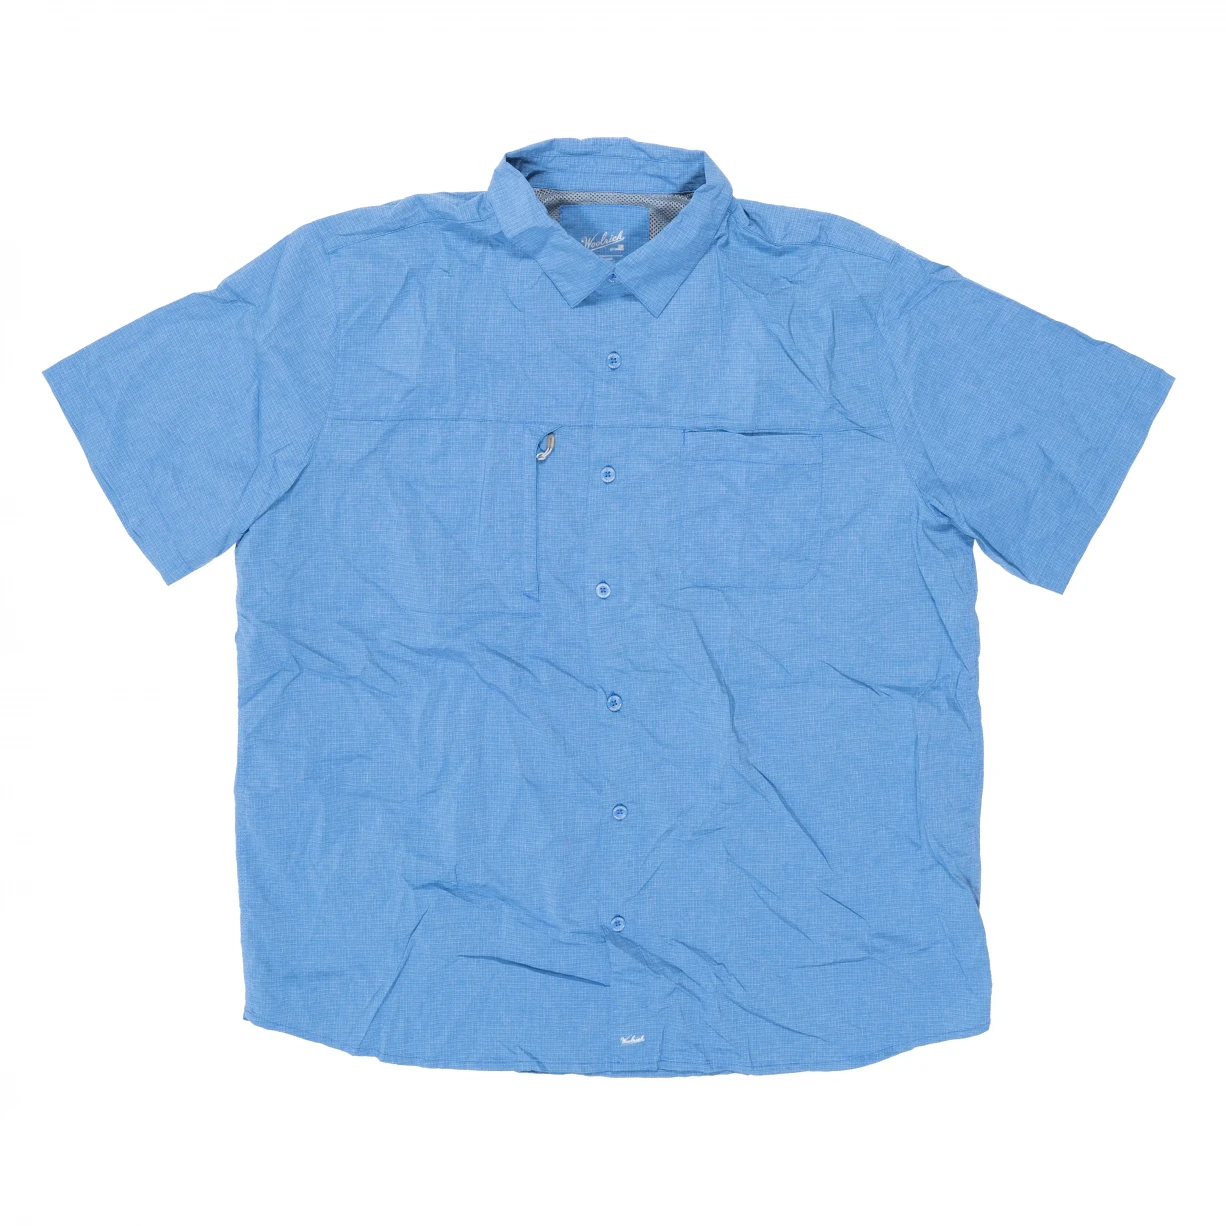 Item 934317 - Woolrich Short Sleeve Fishing Shirt - Men's Butt